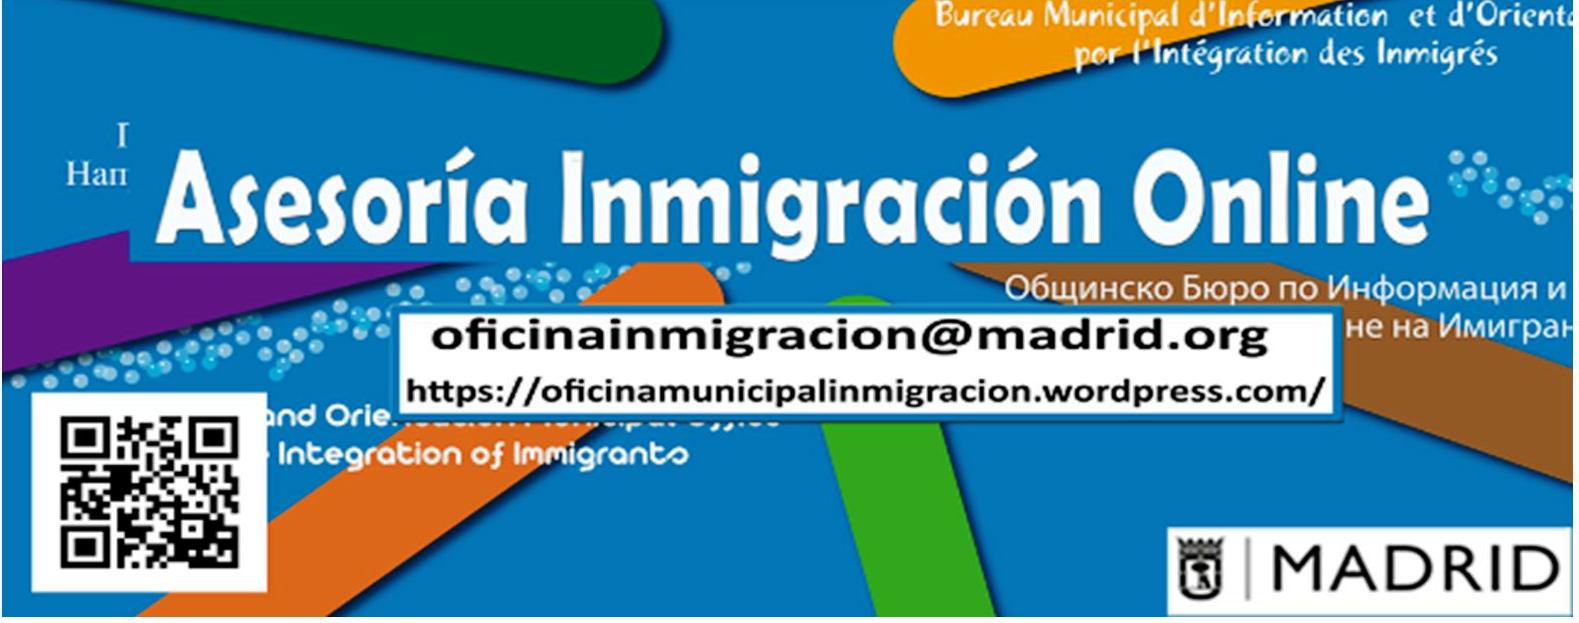 asesoria-inmigracion-12-16